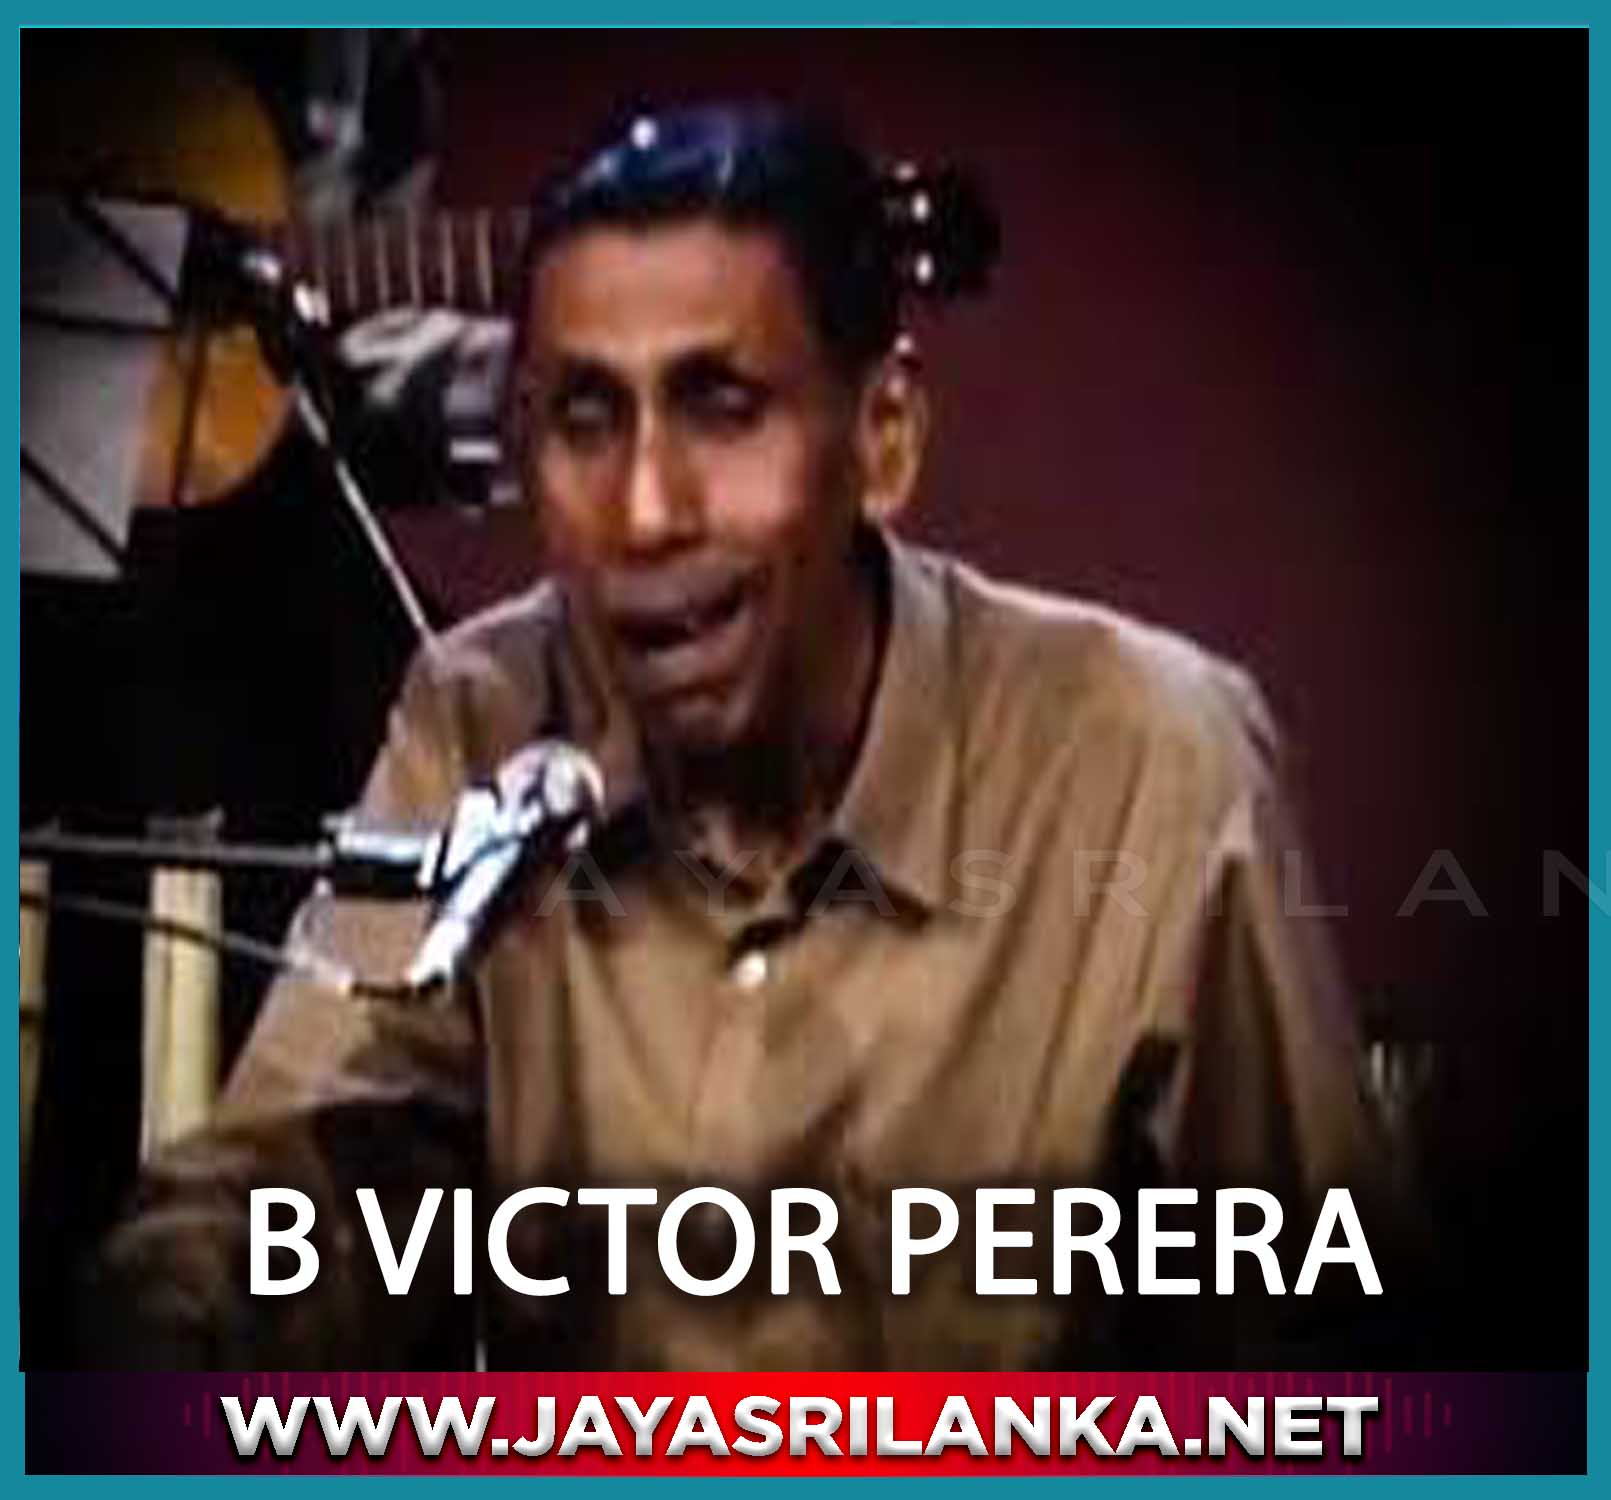 Mana Bandana Rasa Anjana - B Victor Perera mp3 Image